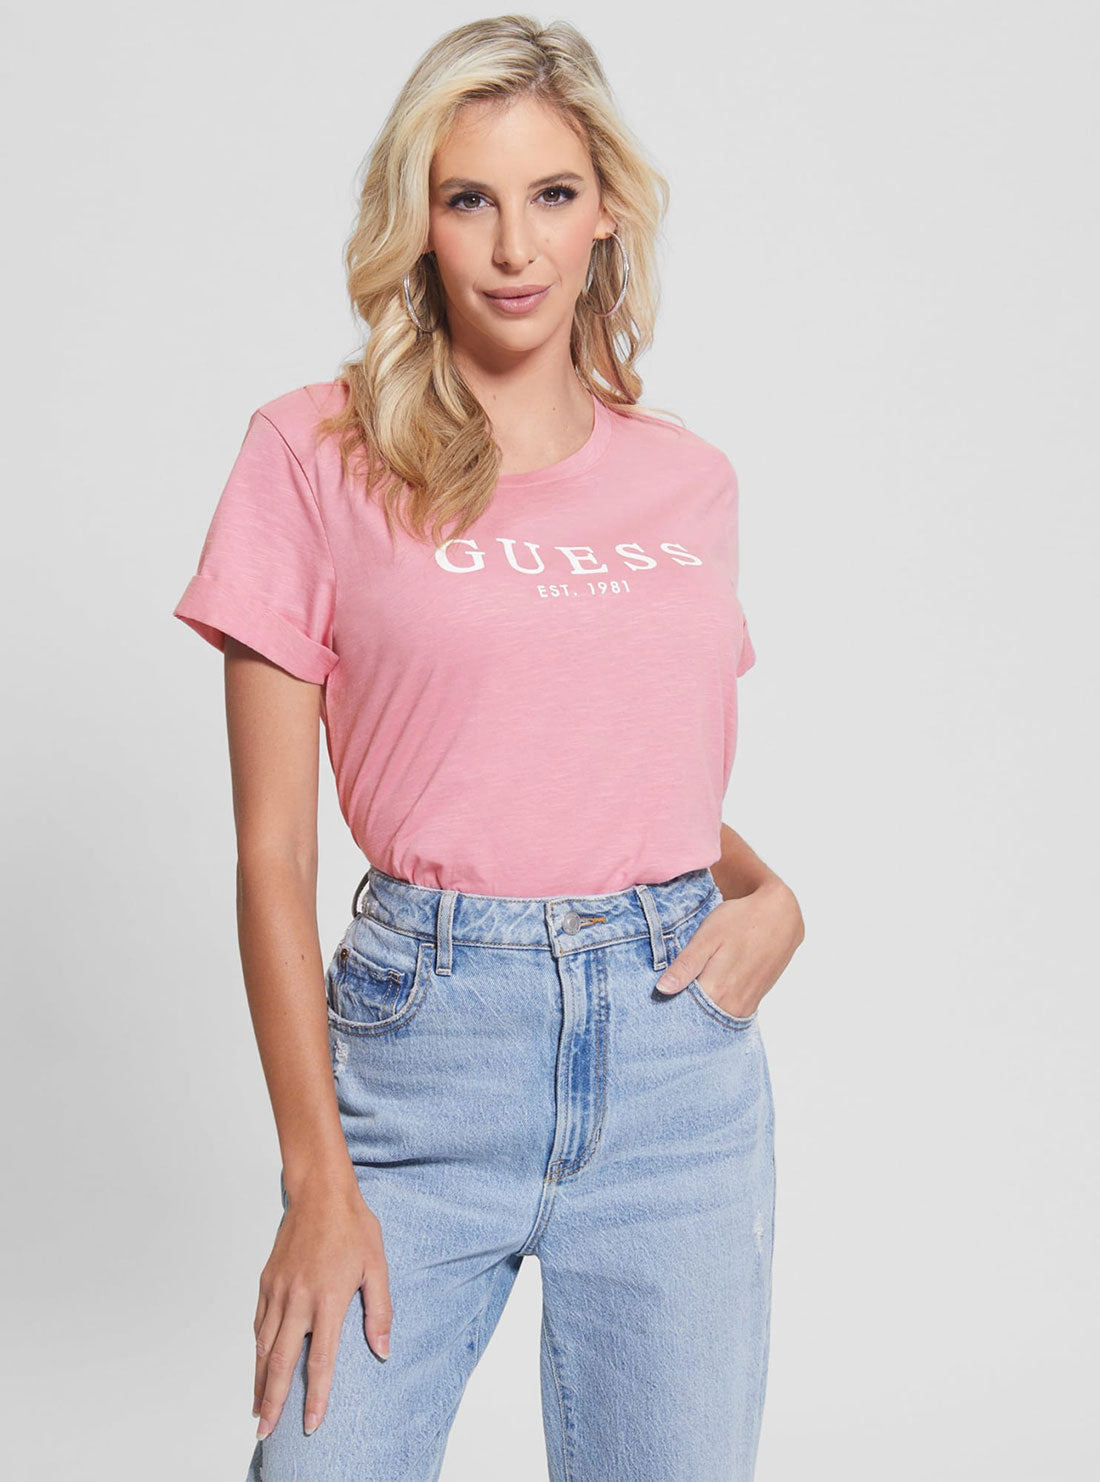 GUESS Women's Eco Pink 1981 Roll Cuff Logo T-Shirt W2BI68K8G01 Front View